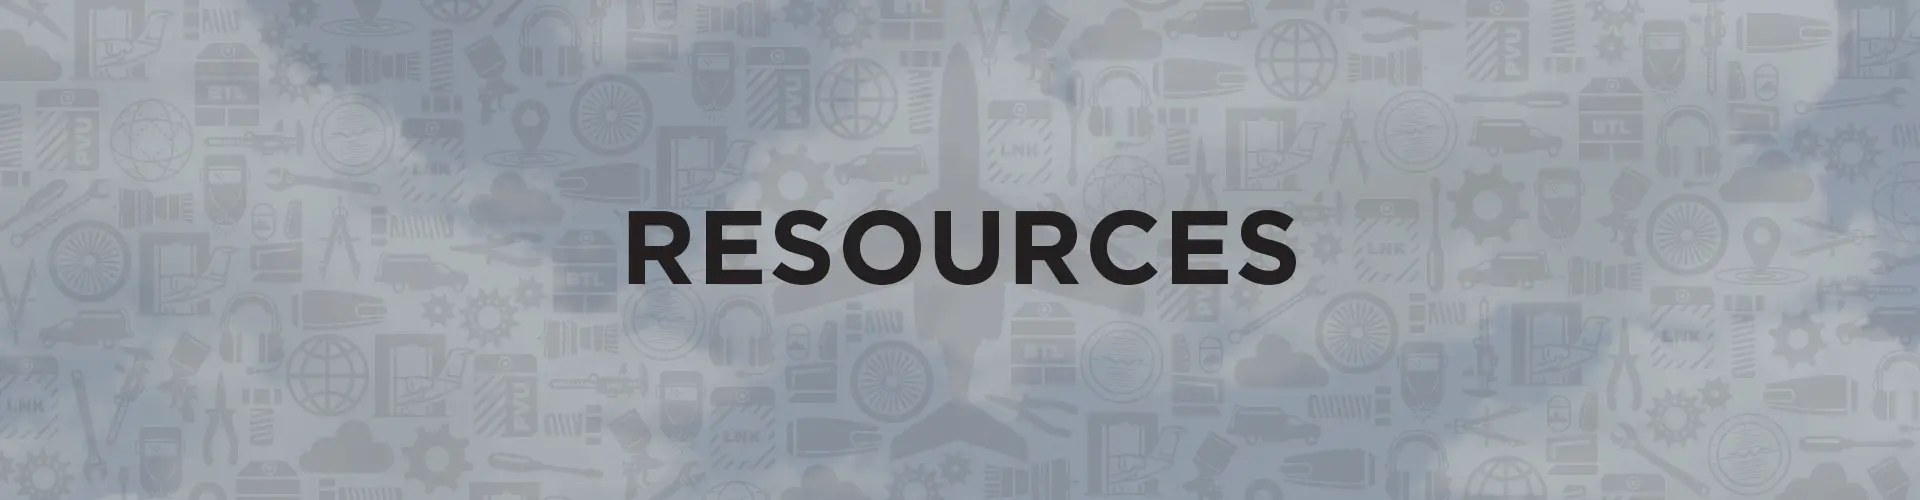 Resources_header-Resources.jpg